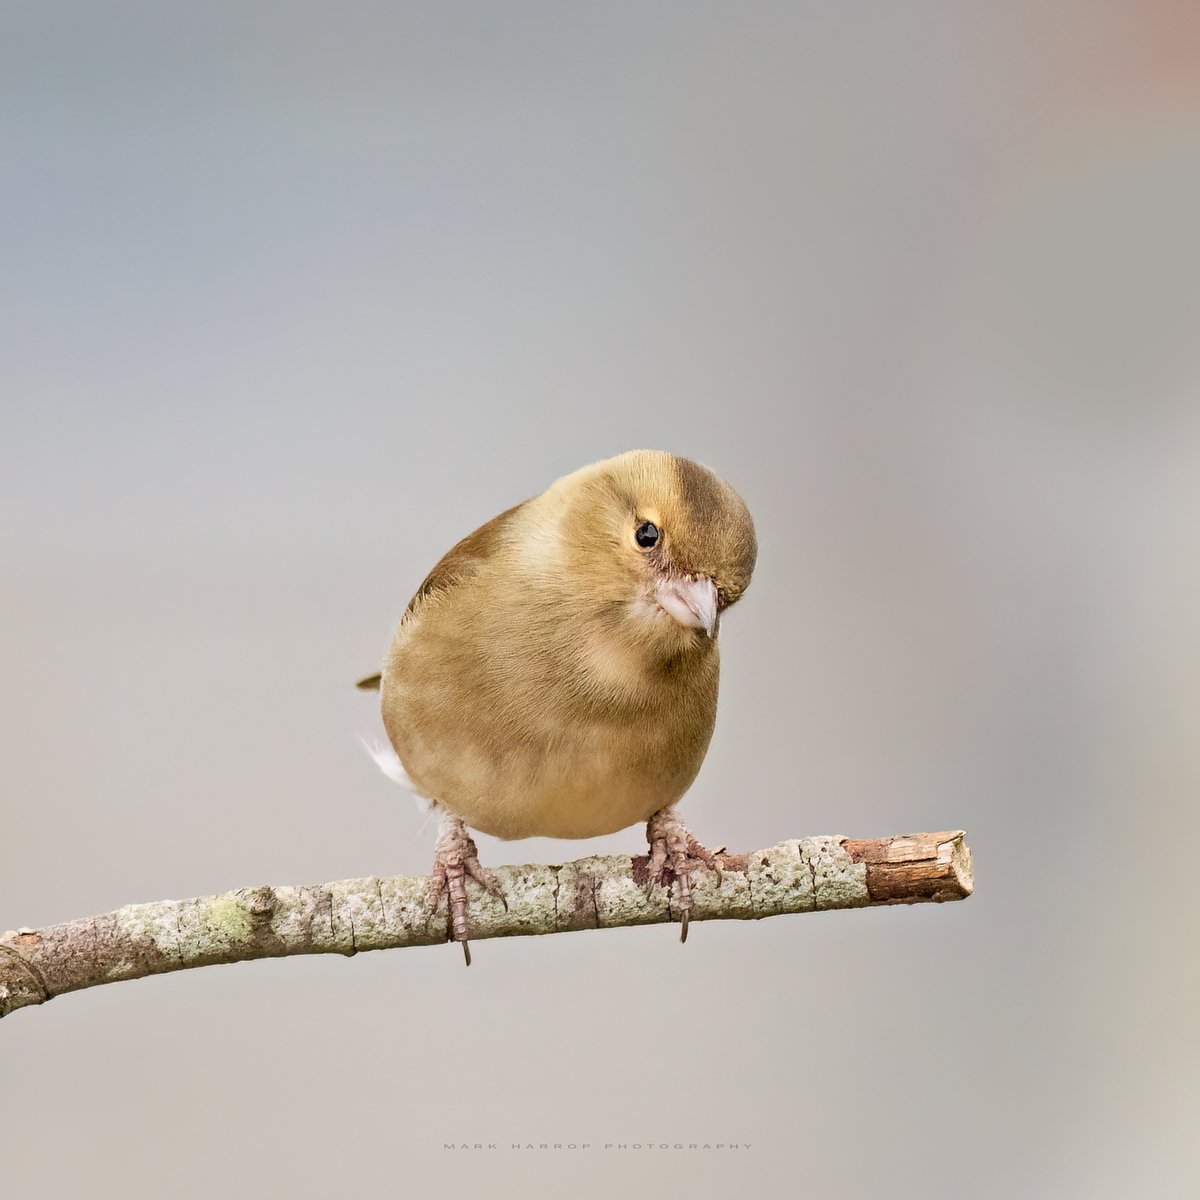 'Yes, of course I know I'm cute.' Female Chaffinch.
#TwitterNaturePhotography #TwitterNatureCommunity #NaturePhotograhpy #scottishborders #birdwatching #BirdGang #rspb #btobirds